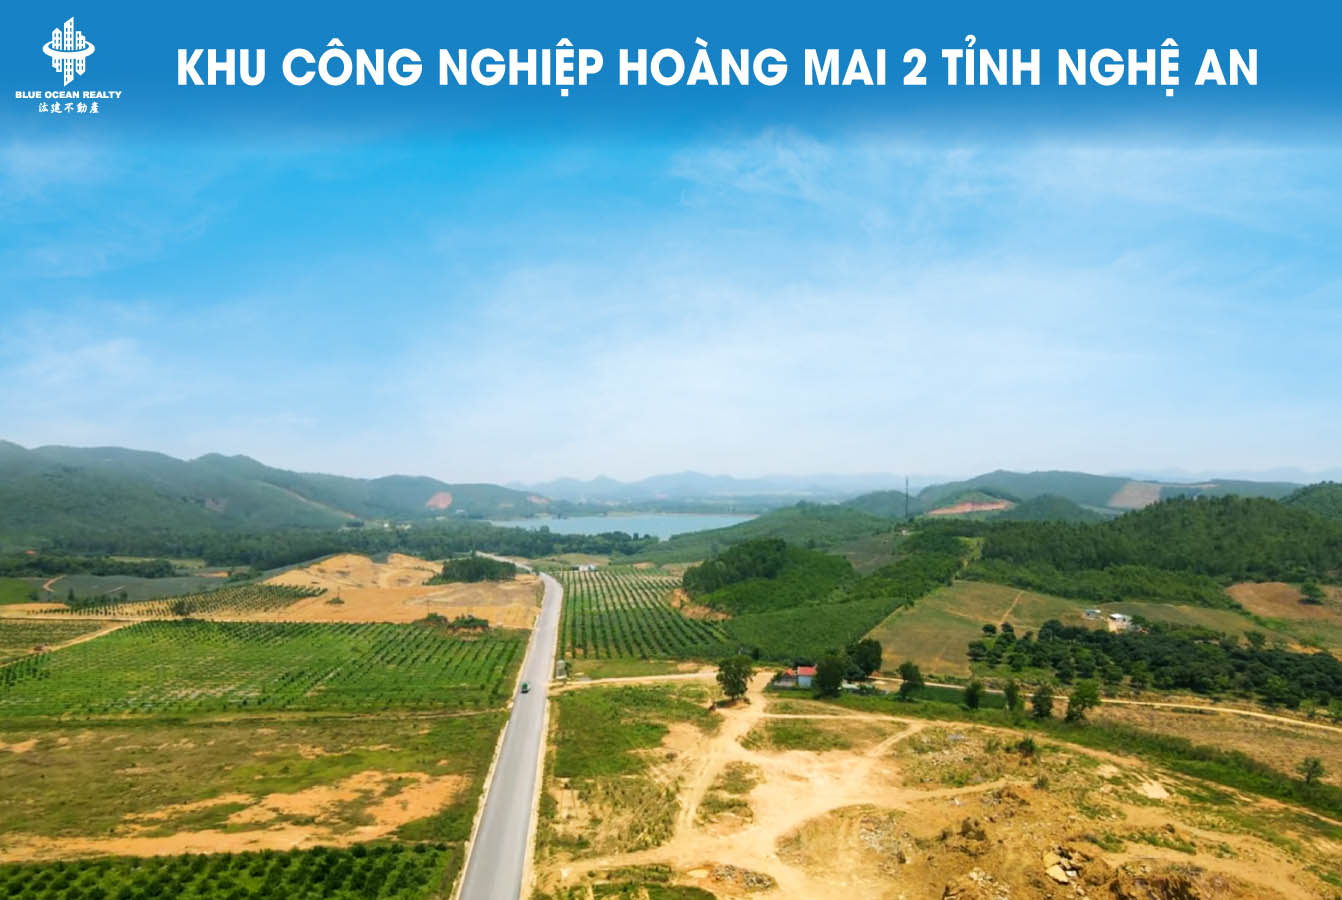 Khu công nghiệp Hoàng Mai 2 tỉnh Nghệ An